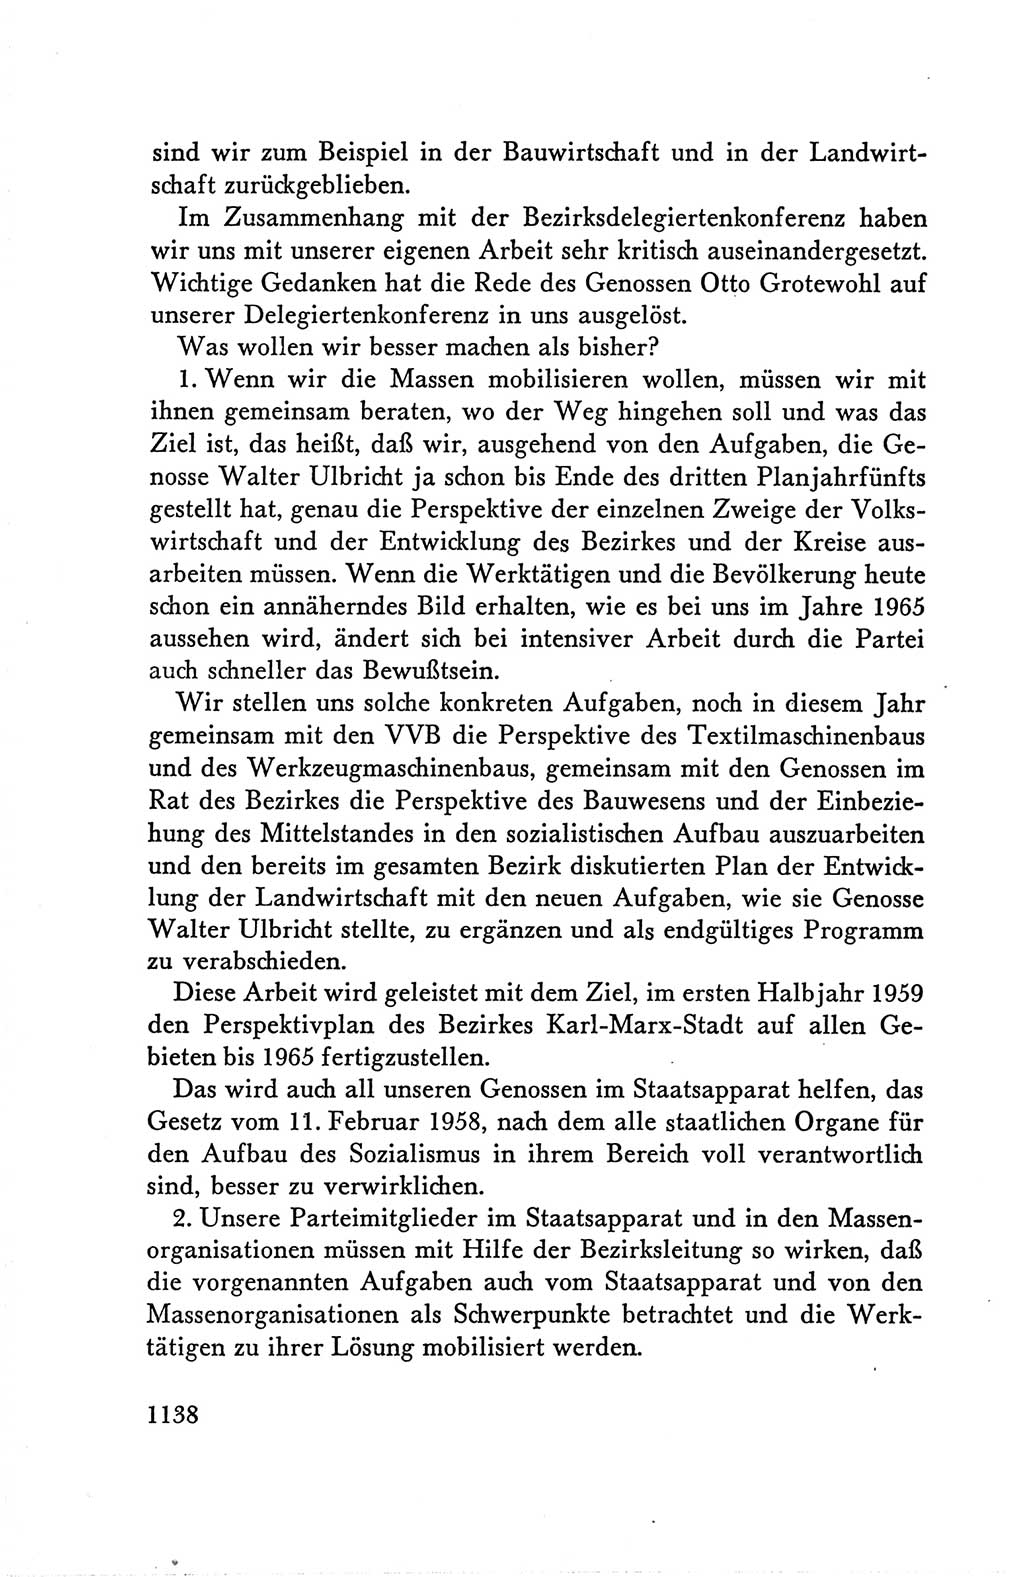 Protokoll der Verhandlungen des Ⅴ. Parteitages der Sozialistischen Einheitspartei Deutschlands (SED) [Deutsche Demokratische Republik (DDR)] 1958, Seite 1138